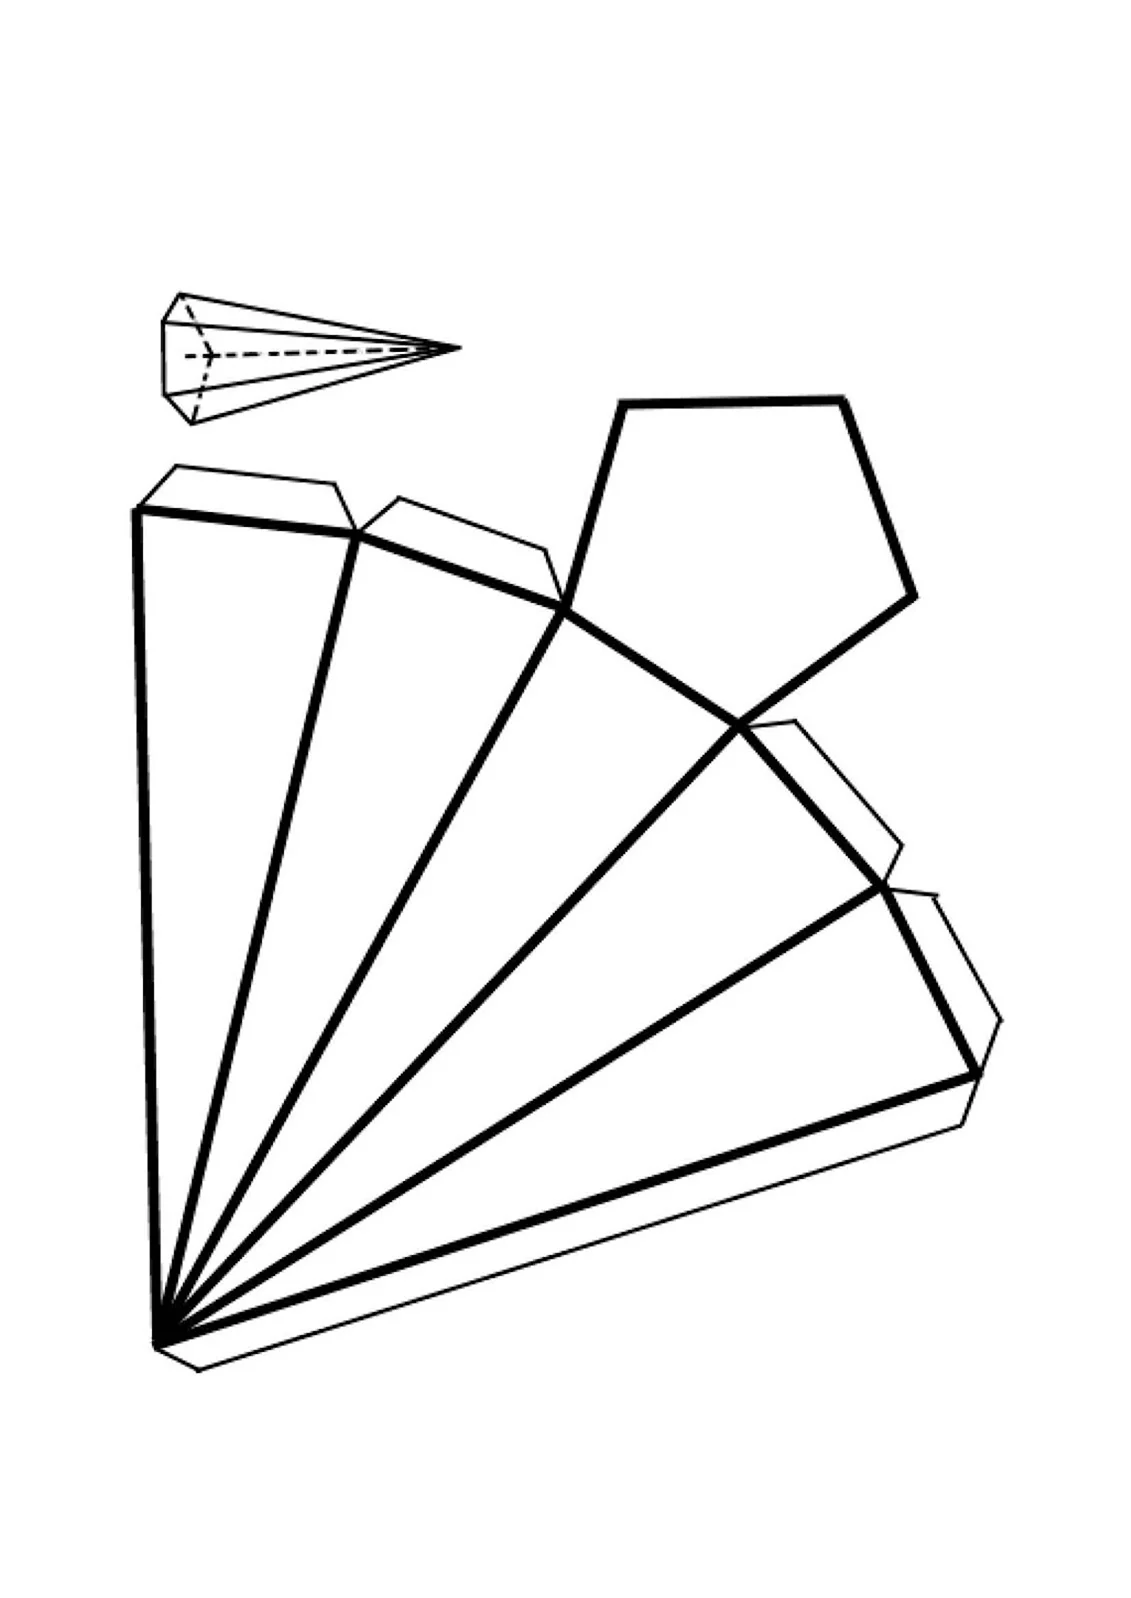 Правильная пятиугольная пирамида развертка